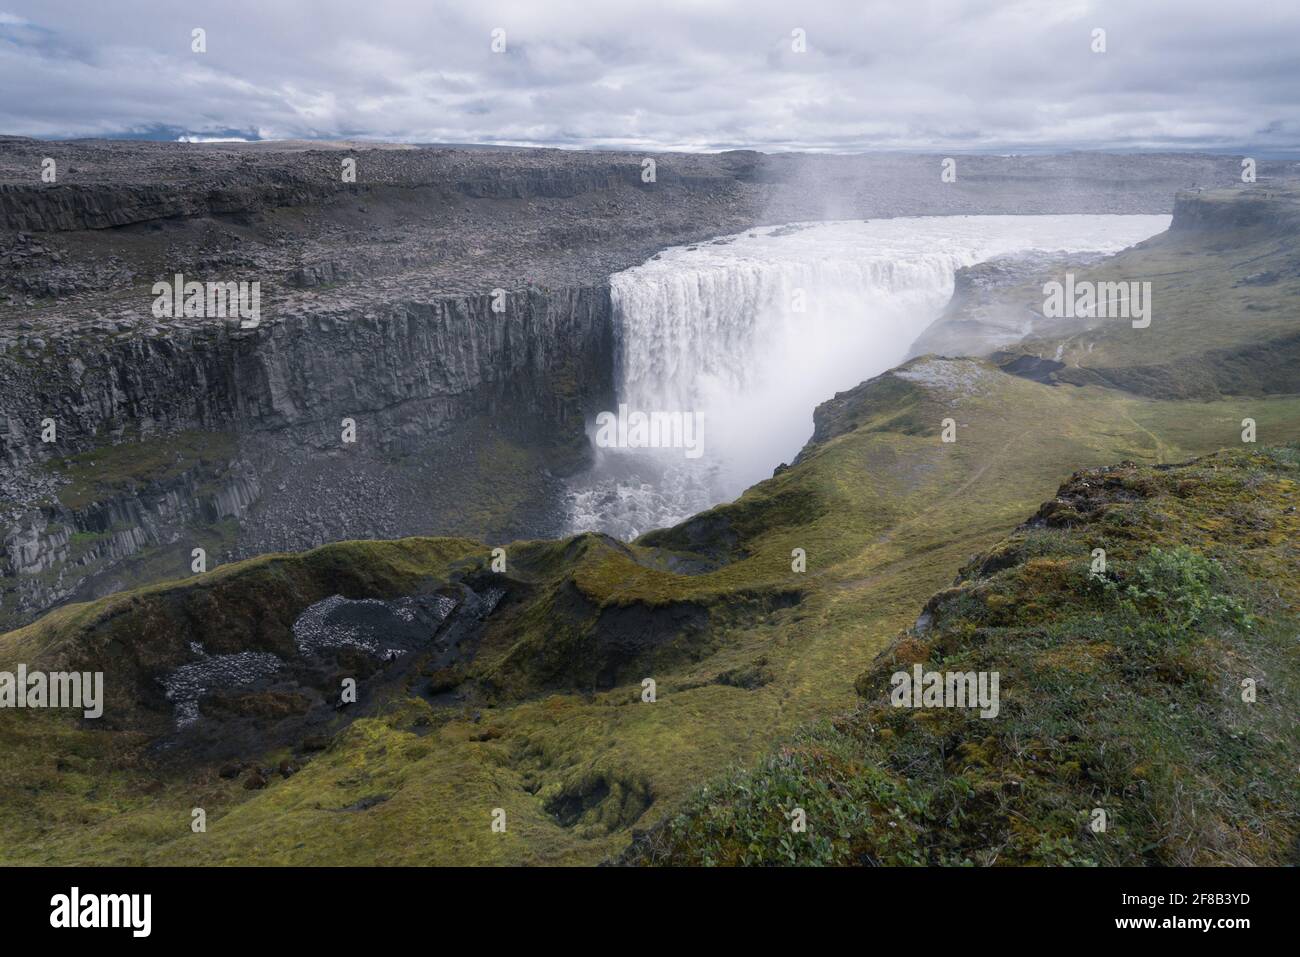 Größter Wasserfall Europas, Dettifoss. Schlammiges Wasser fällt über den Rand. Majestätischer isländischer Wasserfall an einem regnerischen, bewölkten Tag. Stockfoto